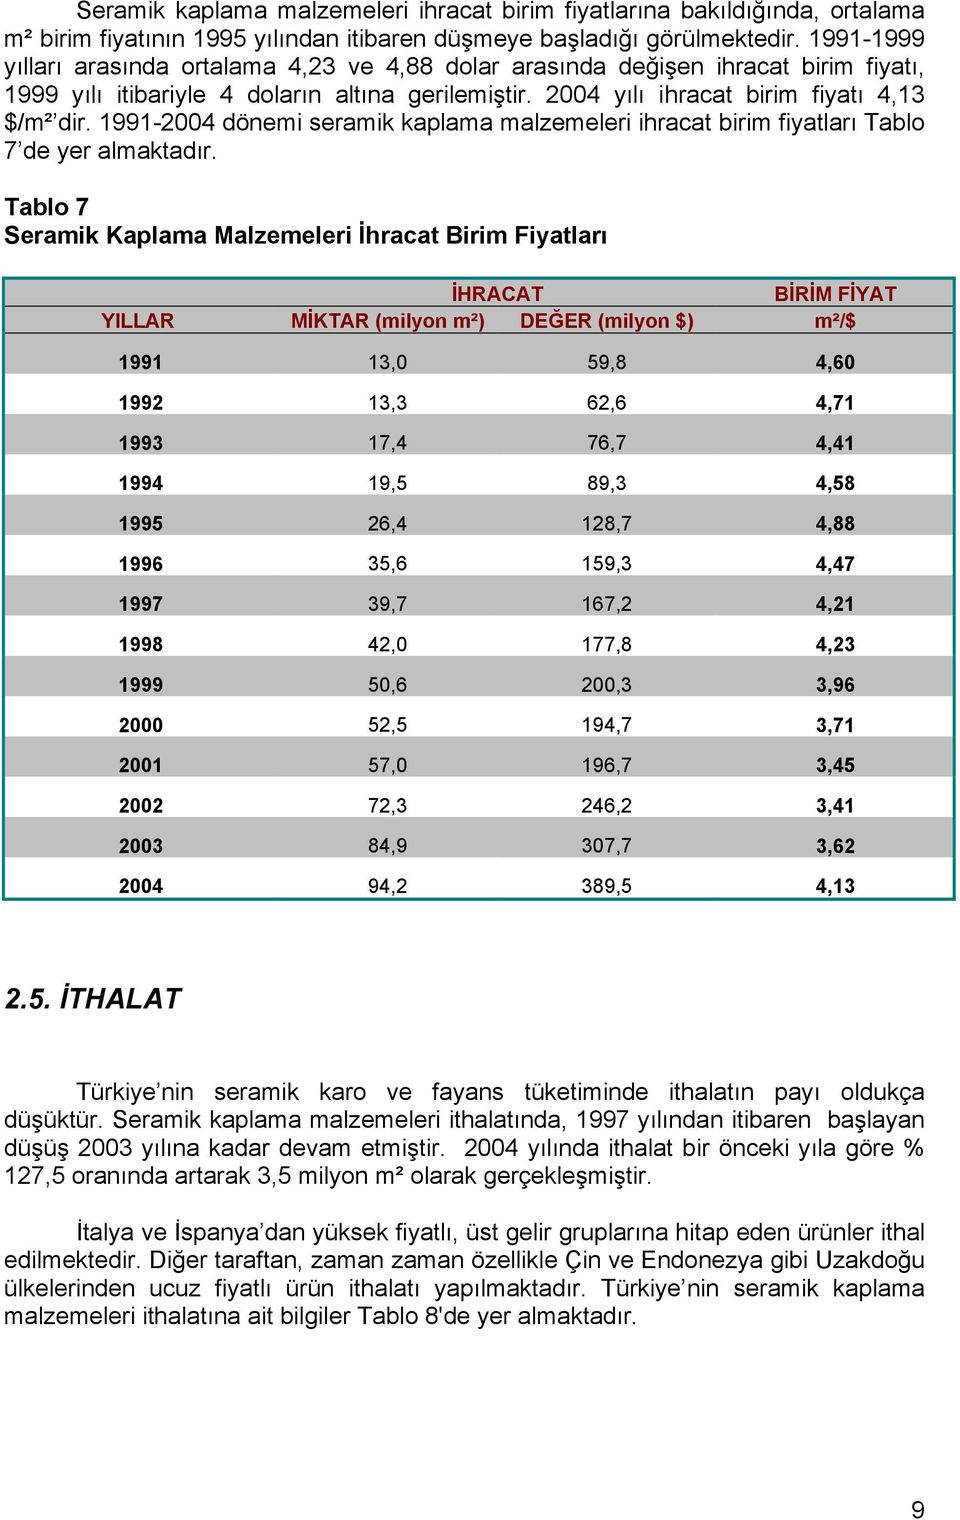 1991-2004 dönemi seramik kaplama malzemeleri ihracat birim fiyatları Tablo 7 de yer almaktadır.